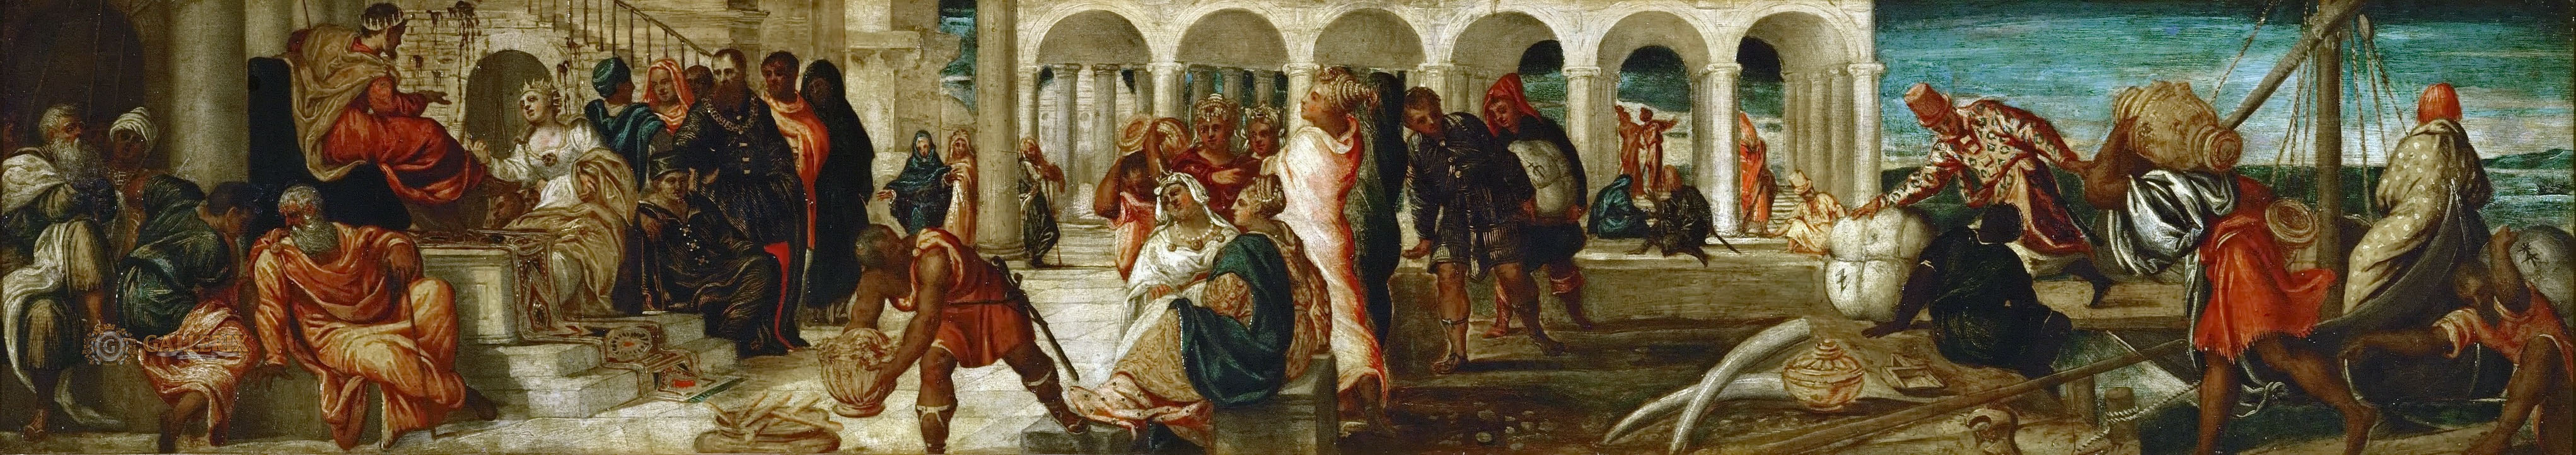 Тинторетто. "Вирсавия и Соломон". 1545. Музей истории искусств, Вена.